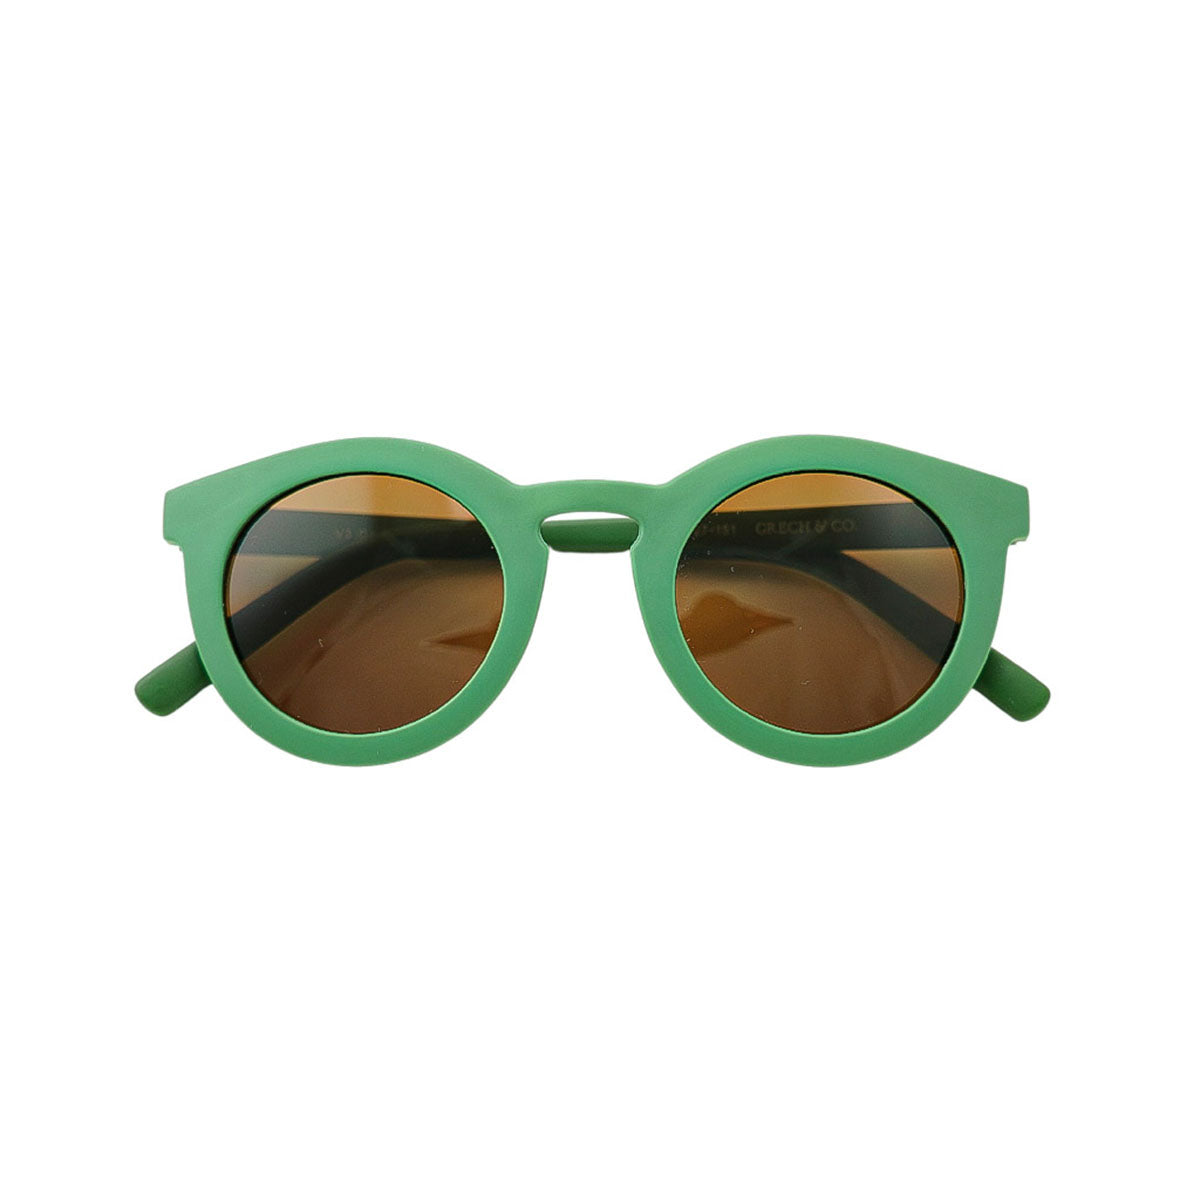 De Grech & co. zonnebril classic buigbaar baby in de kleur orchard is speciaal ontworpen voor baby’s en peuters die willen matchen met hun mama. De zonnebril is namelijk ook beschikbaar voor moeders en kinderen! VanZus